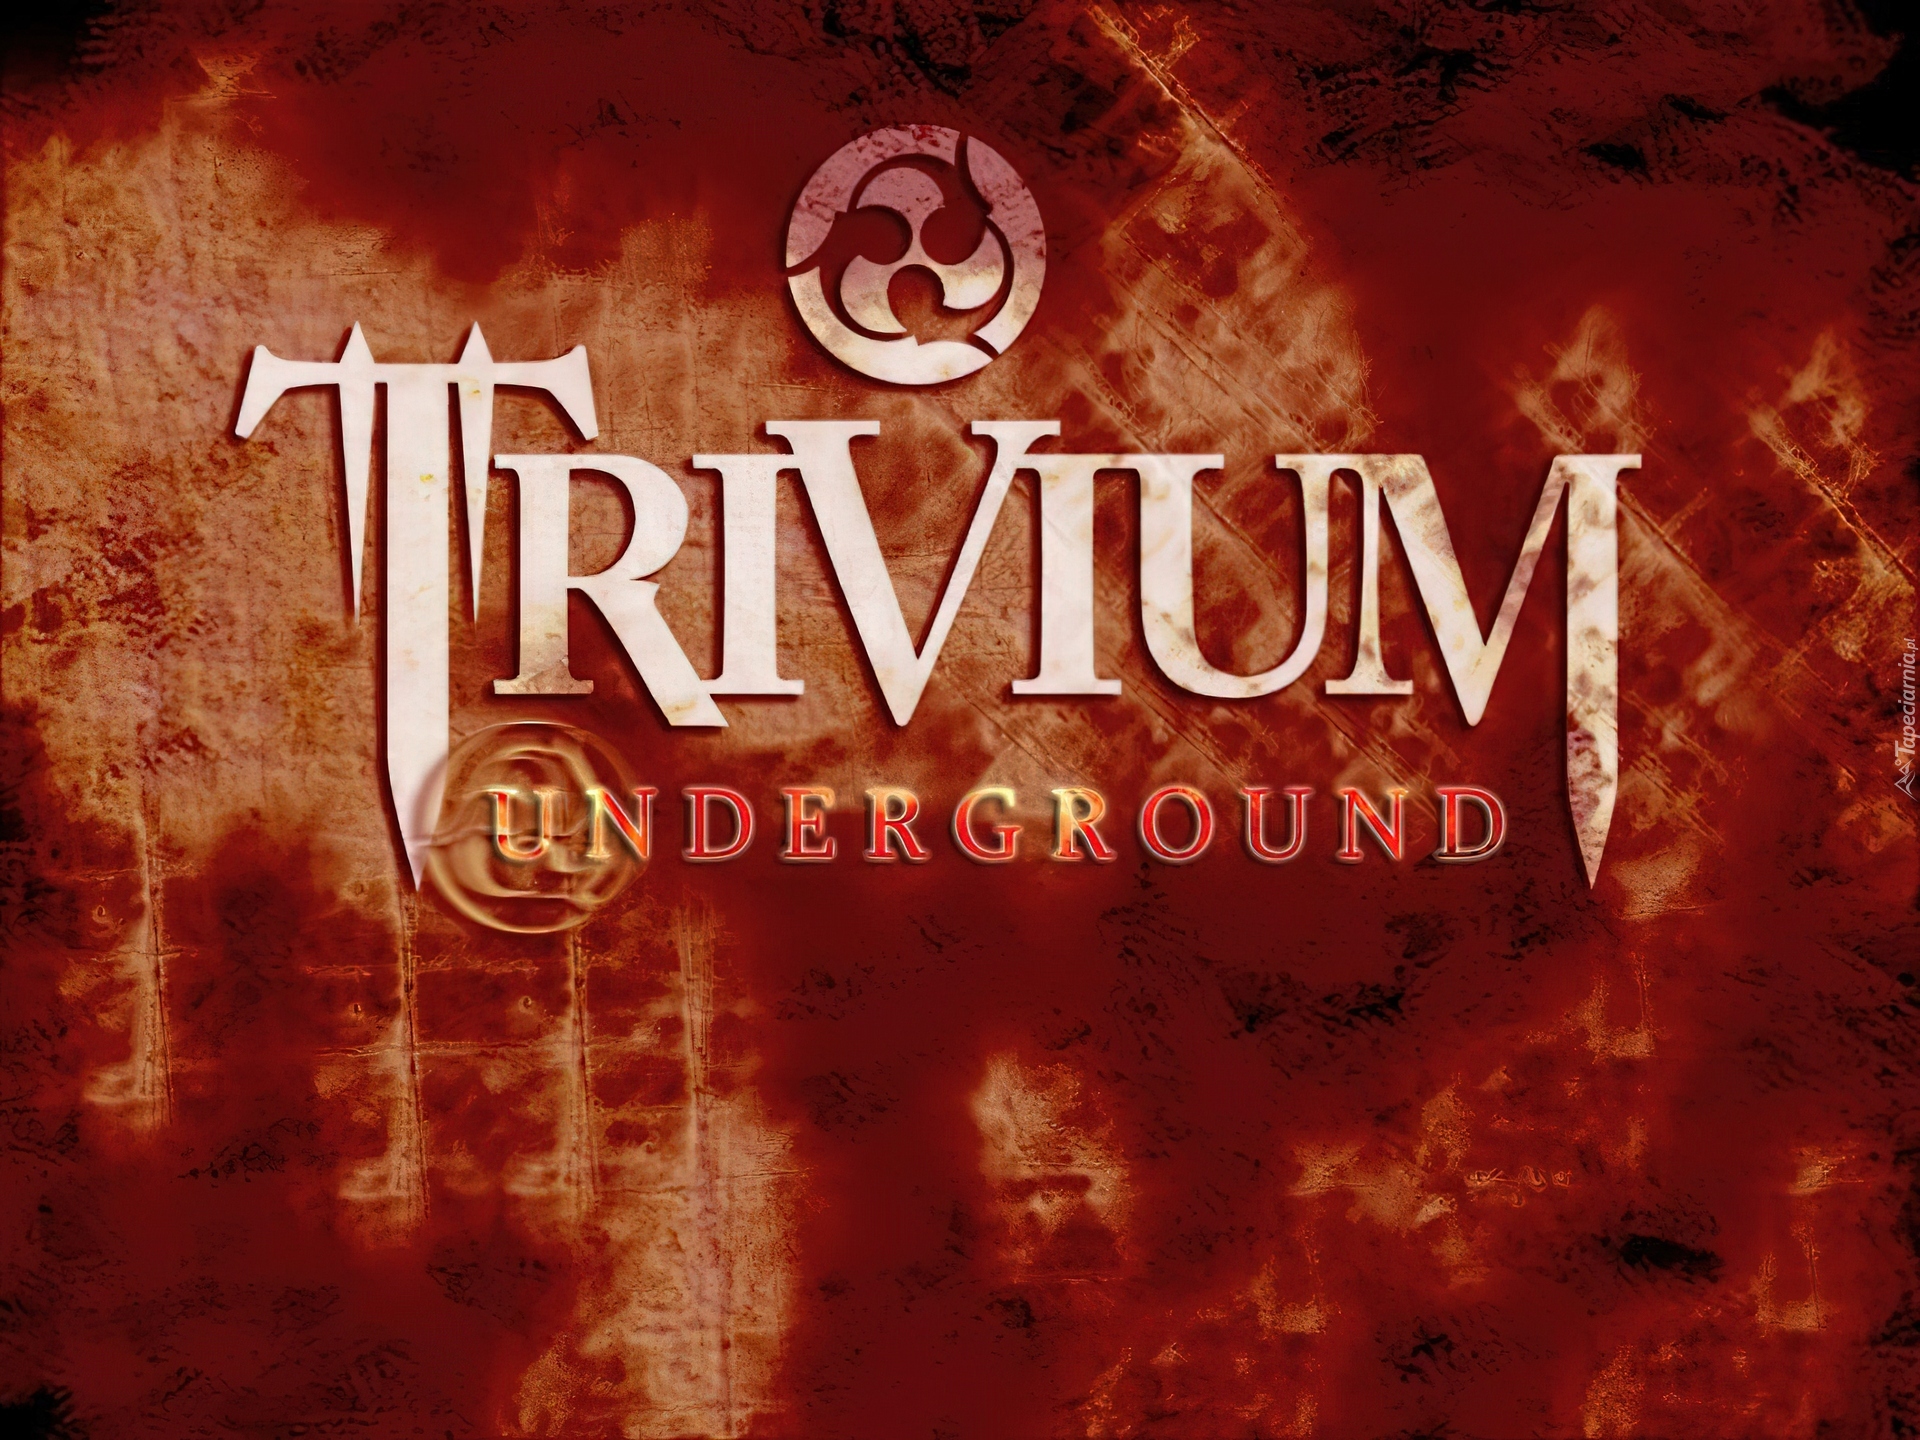 Trivium,Underground